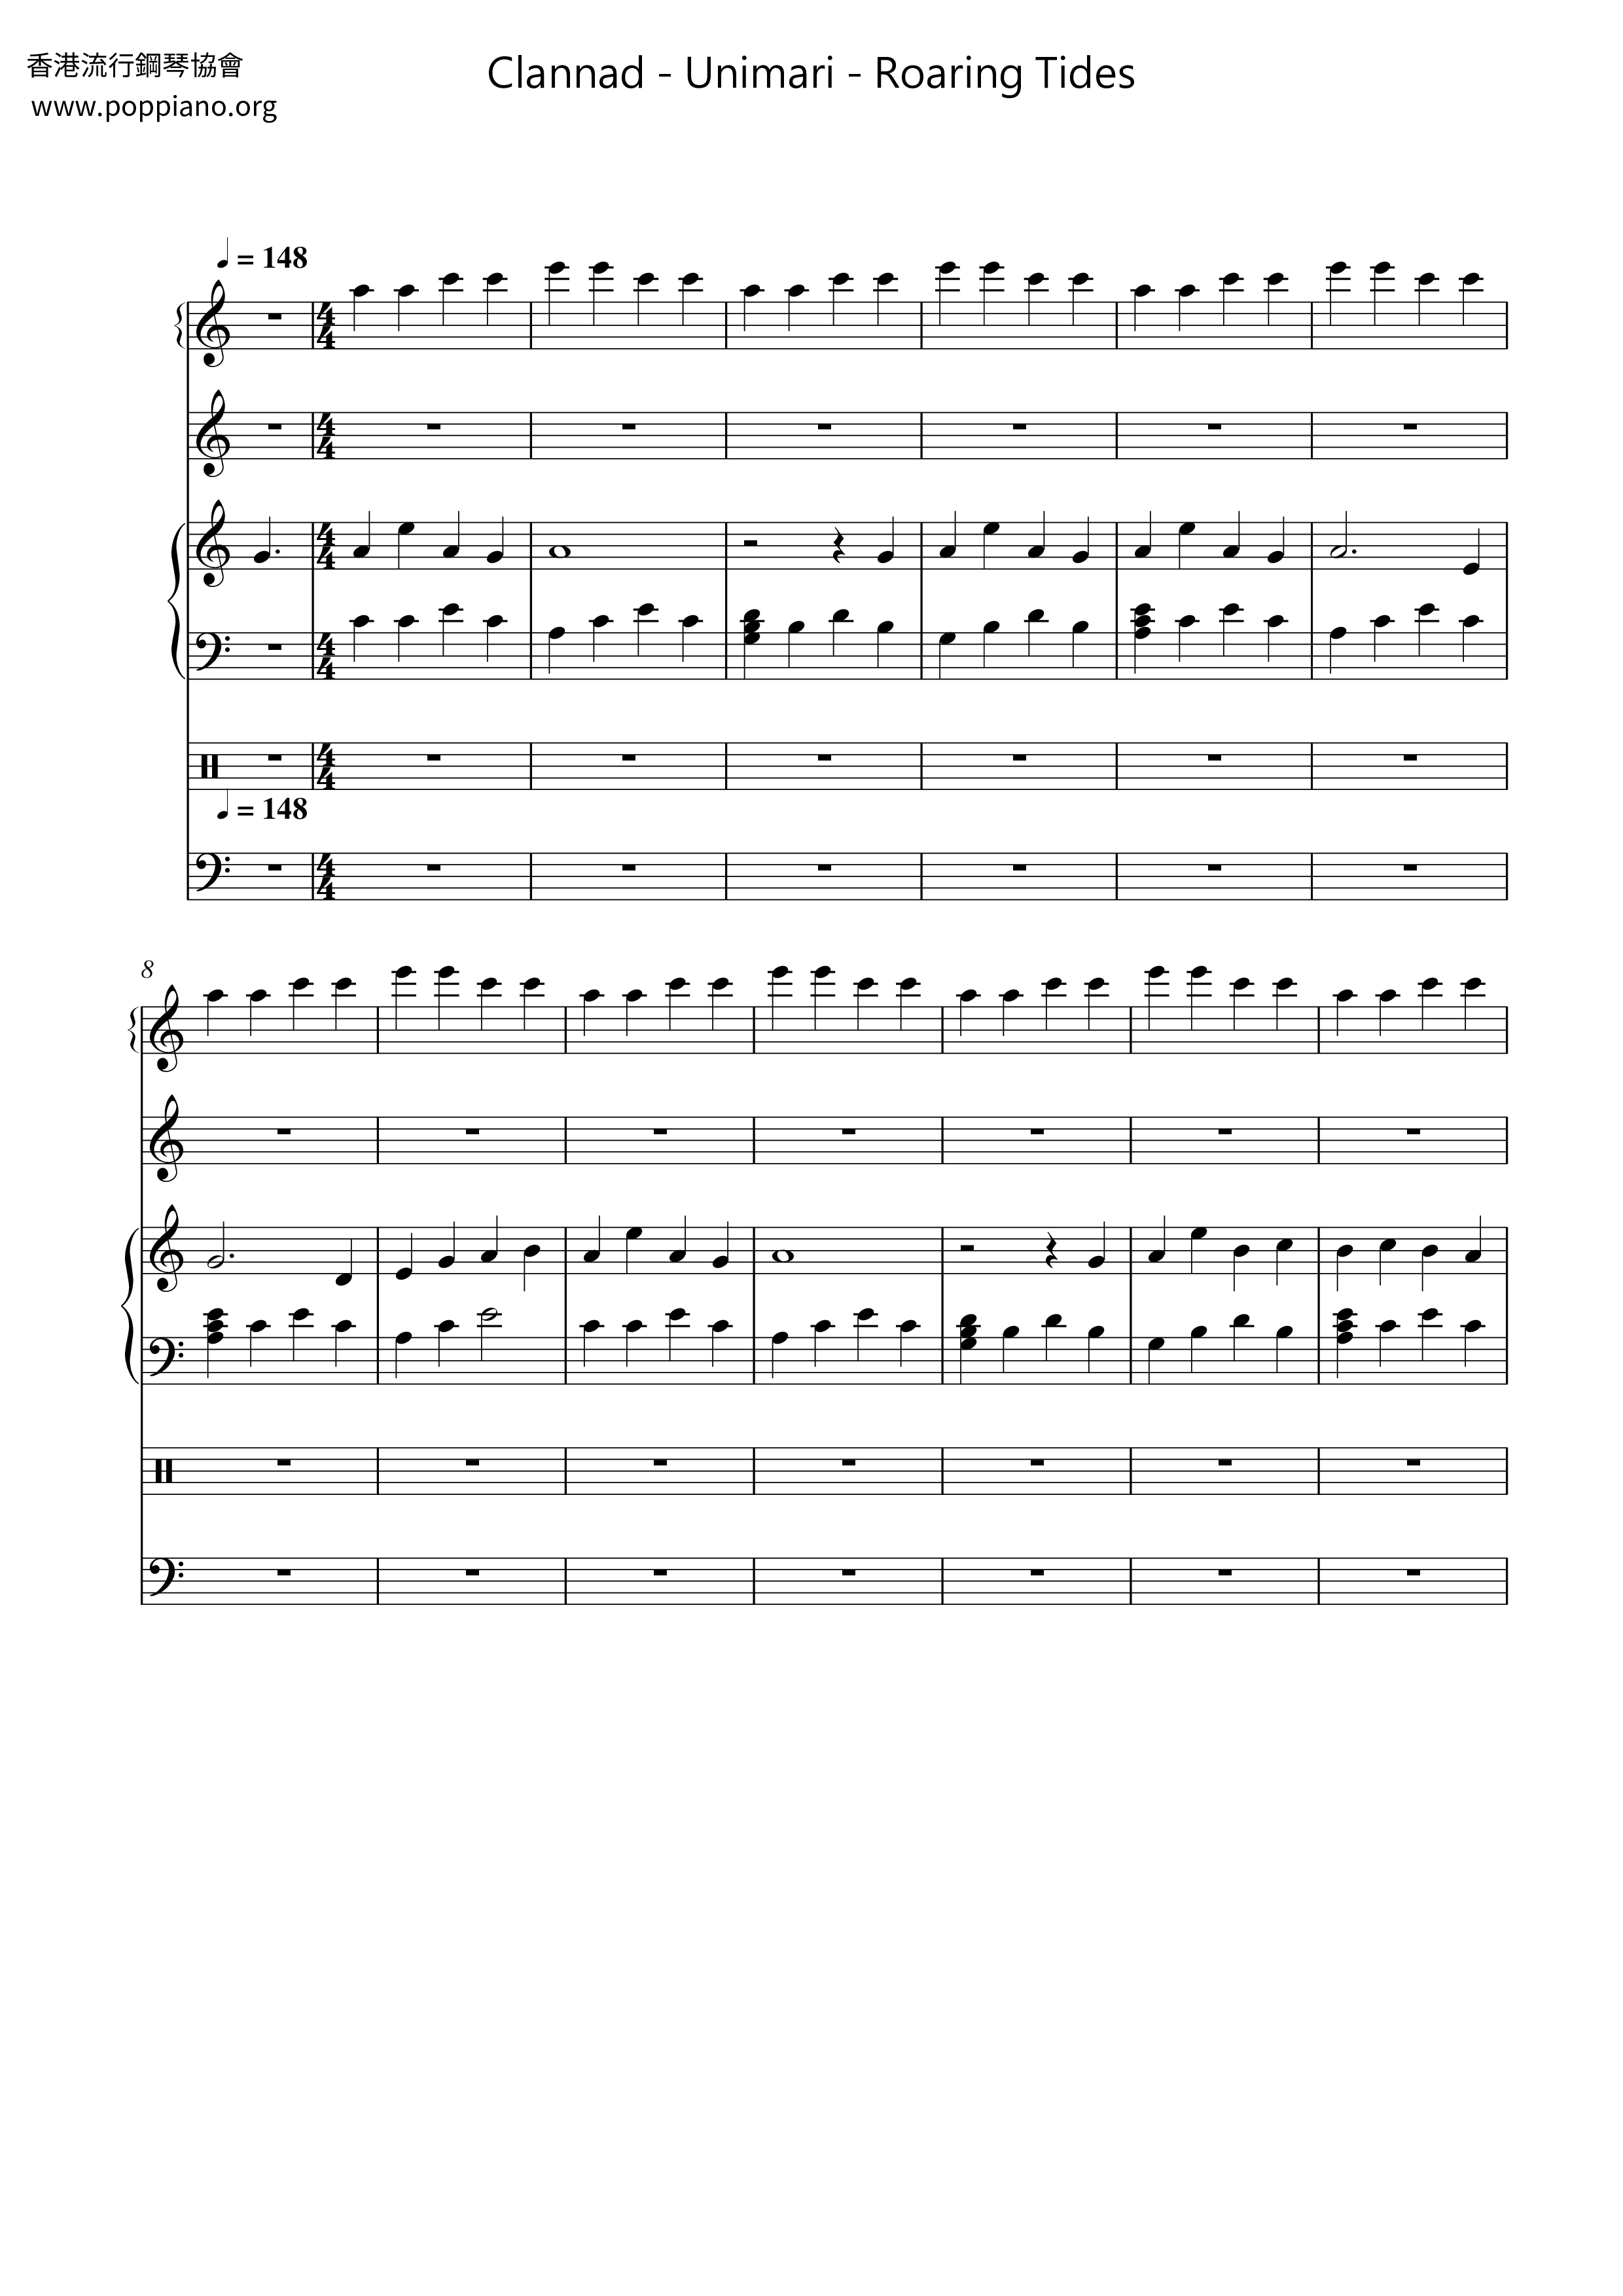 Clannad - Roaring Tidesピアノ譜